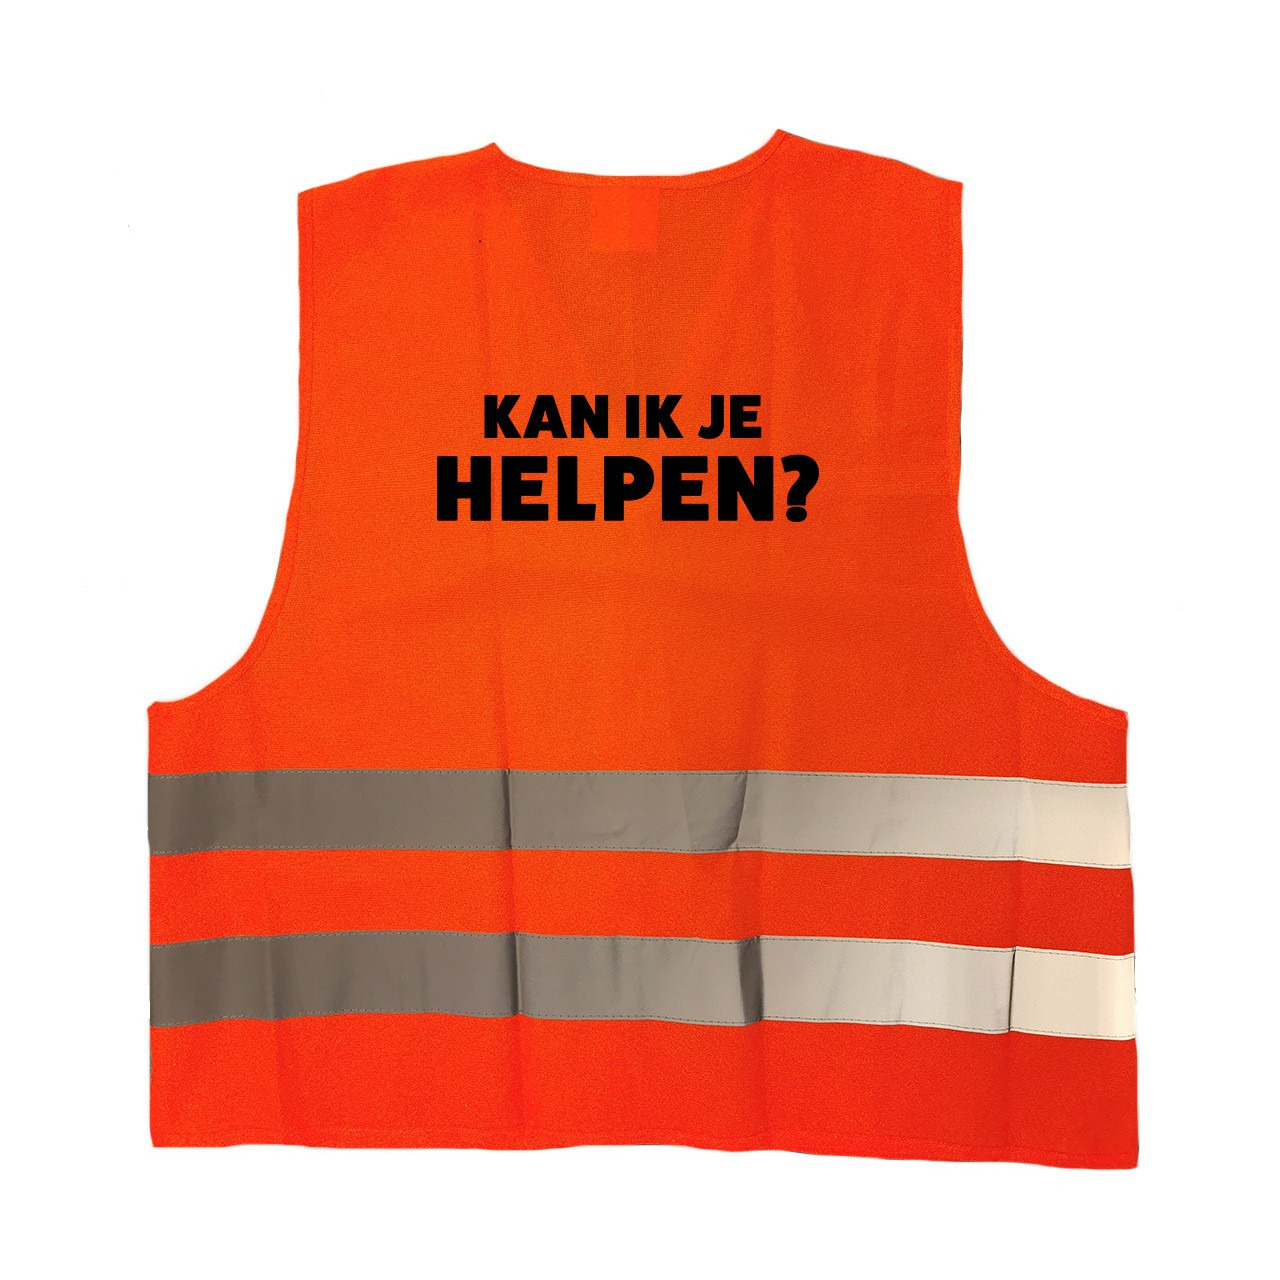 Kan ik je helpen personeel vestje-hesje oranje met reflecterende strepen voor volwassenen